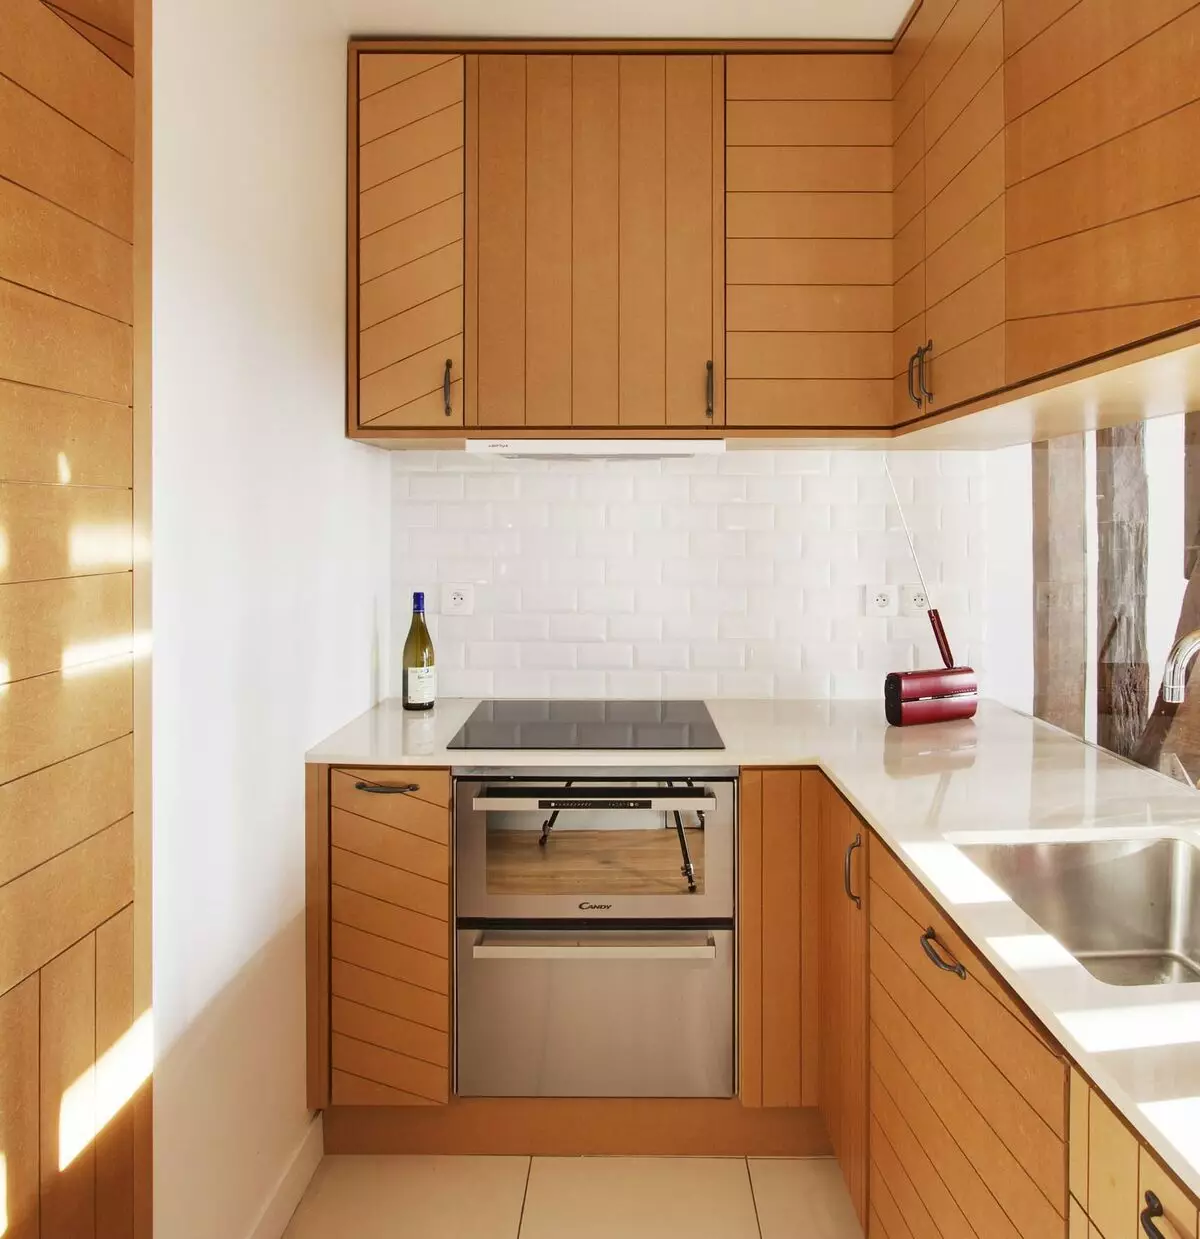 طراحی آشپزخانه 5 مربع. متر (100 عکس): تعمیر در آشپزخانه 5 متر مربع، مجموعه آشپزخانه و دیگر مبلمان، ایده های برنامه ریزی برای آشپزخانه کوچک 9454_51